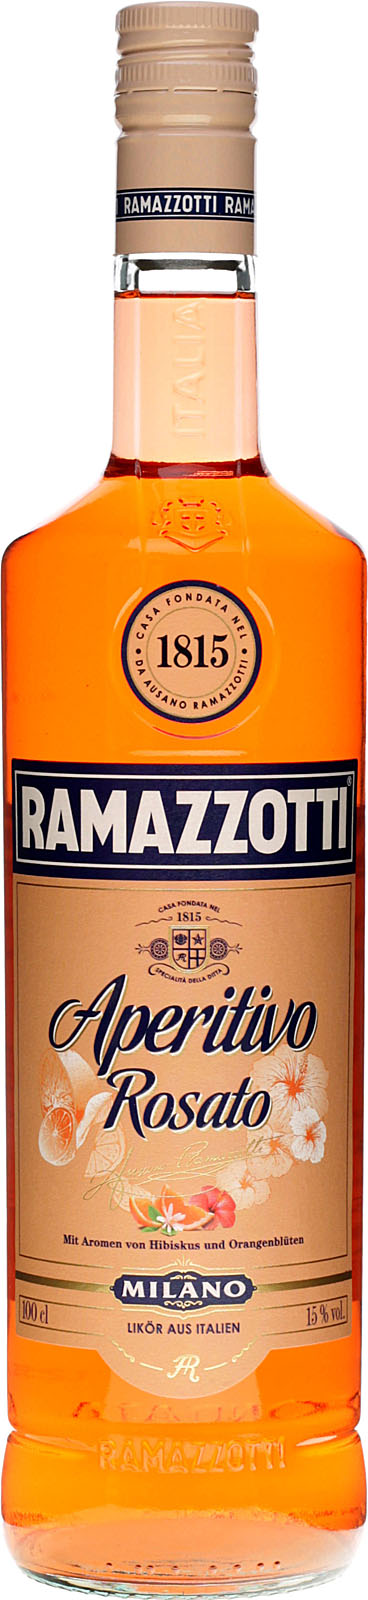 Ramazzotti Aperitivo Rosato 1 Liter günstig bei uns kau